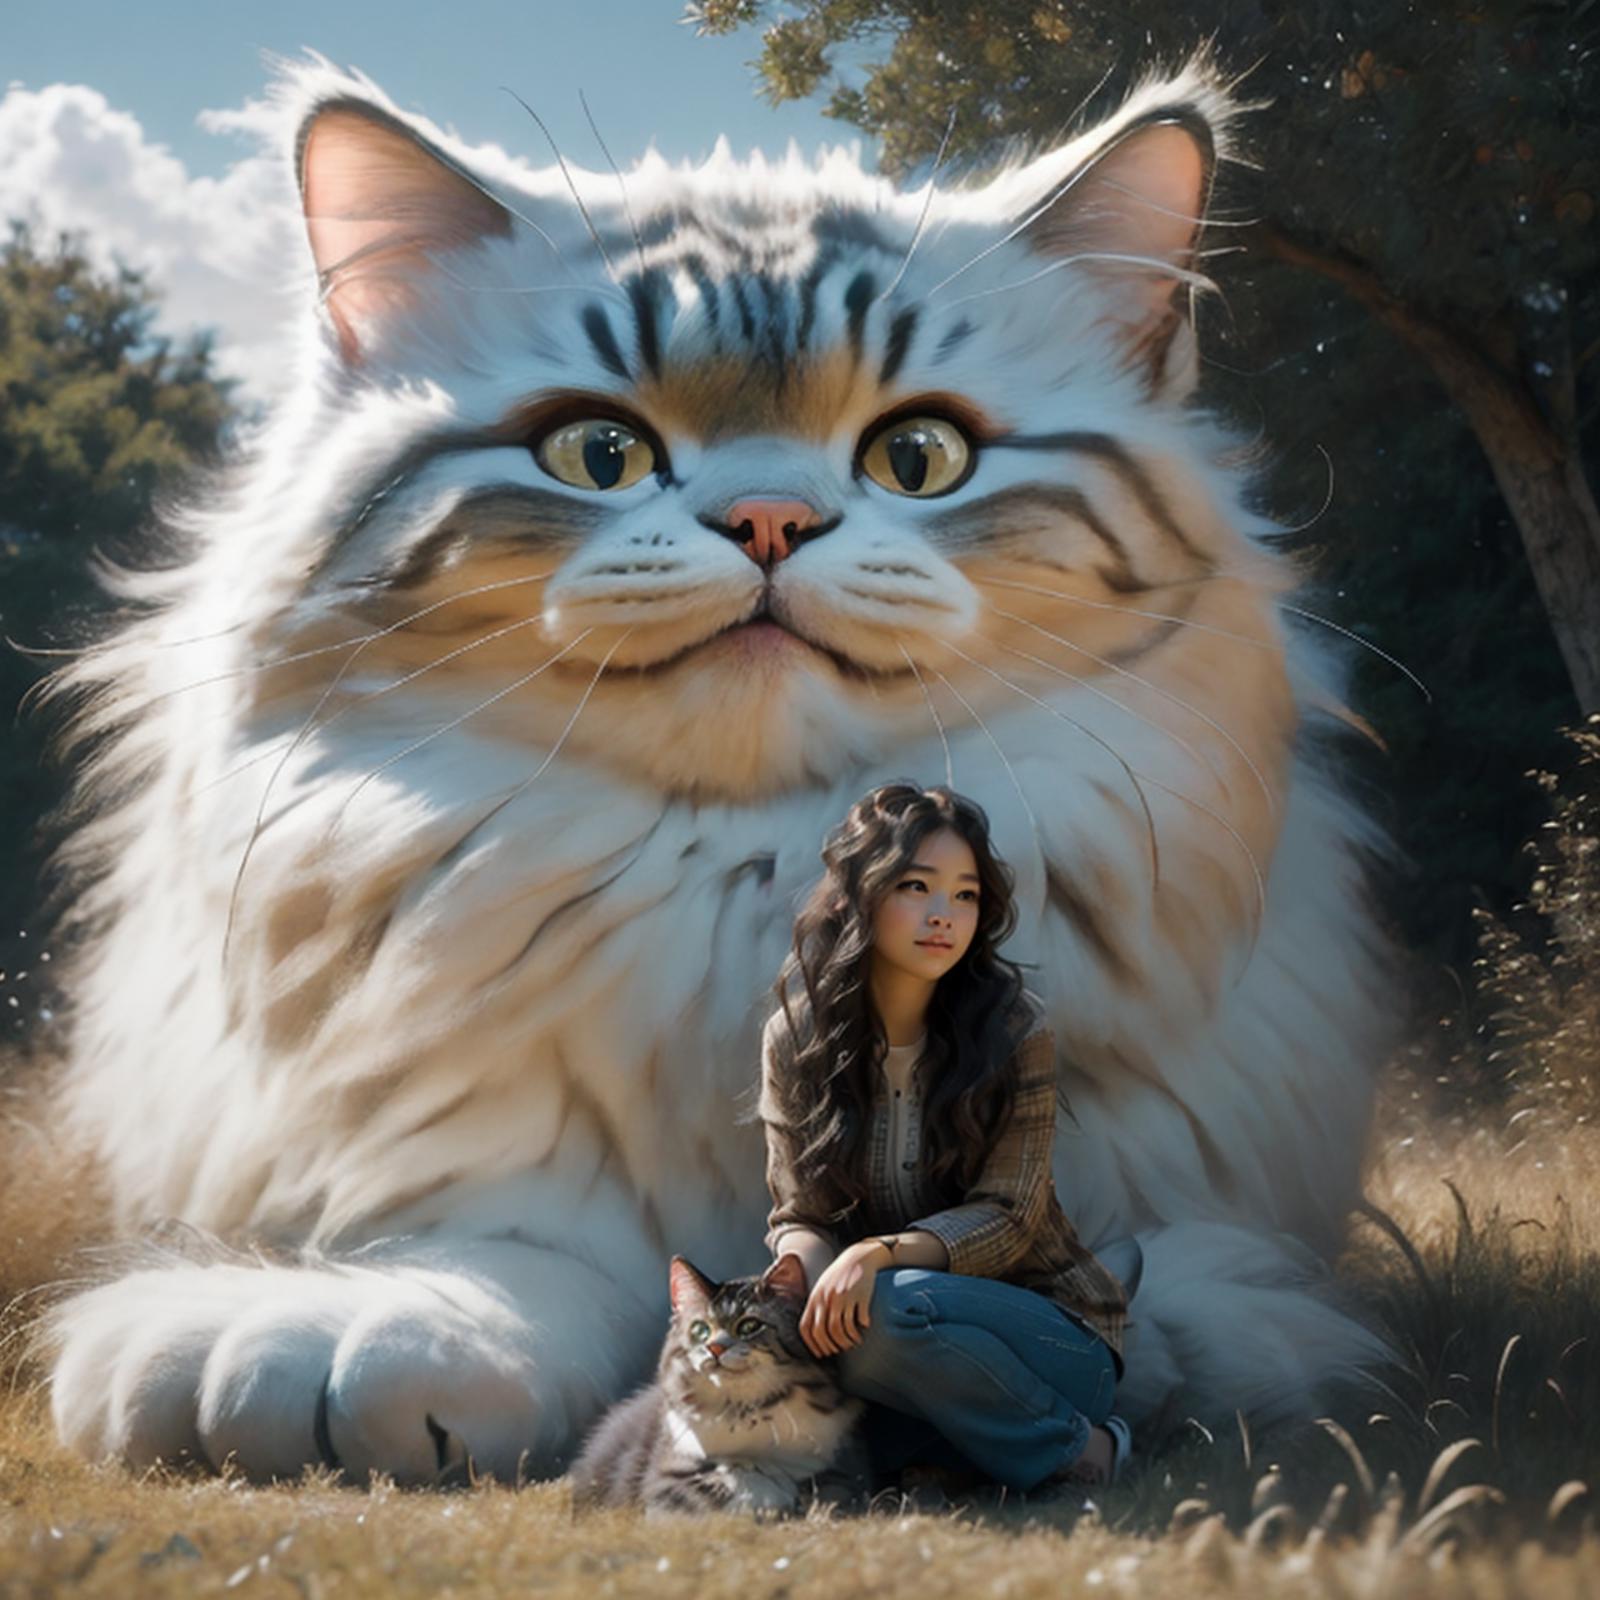 撸猫咯Giant cats image by standingstill